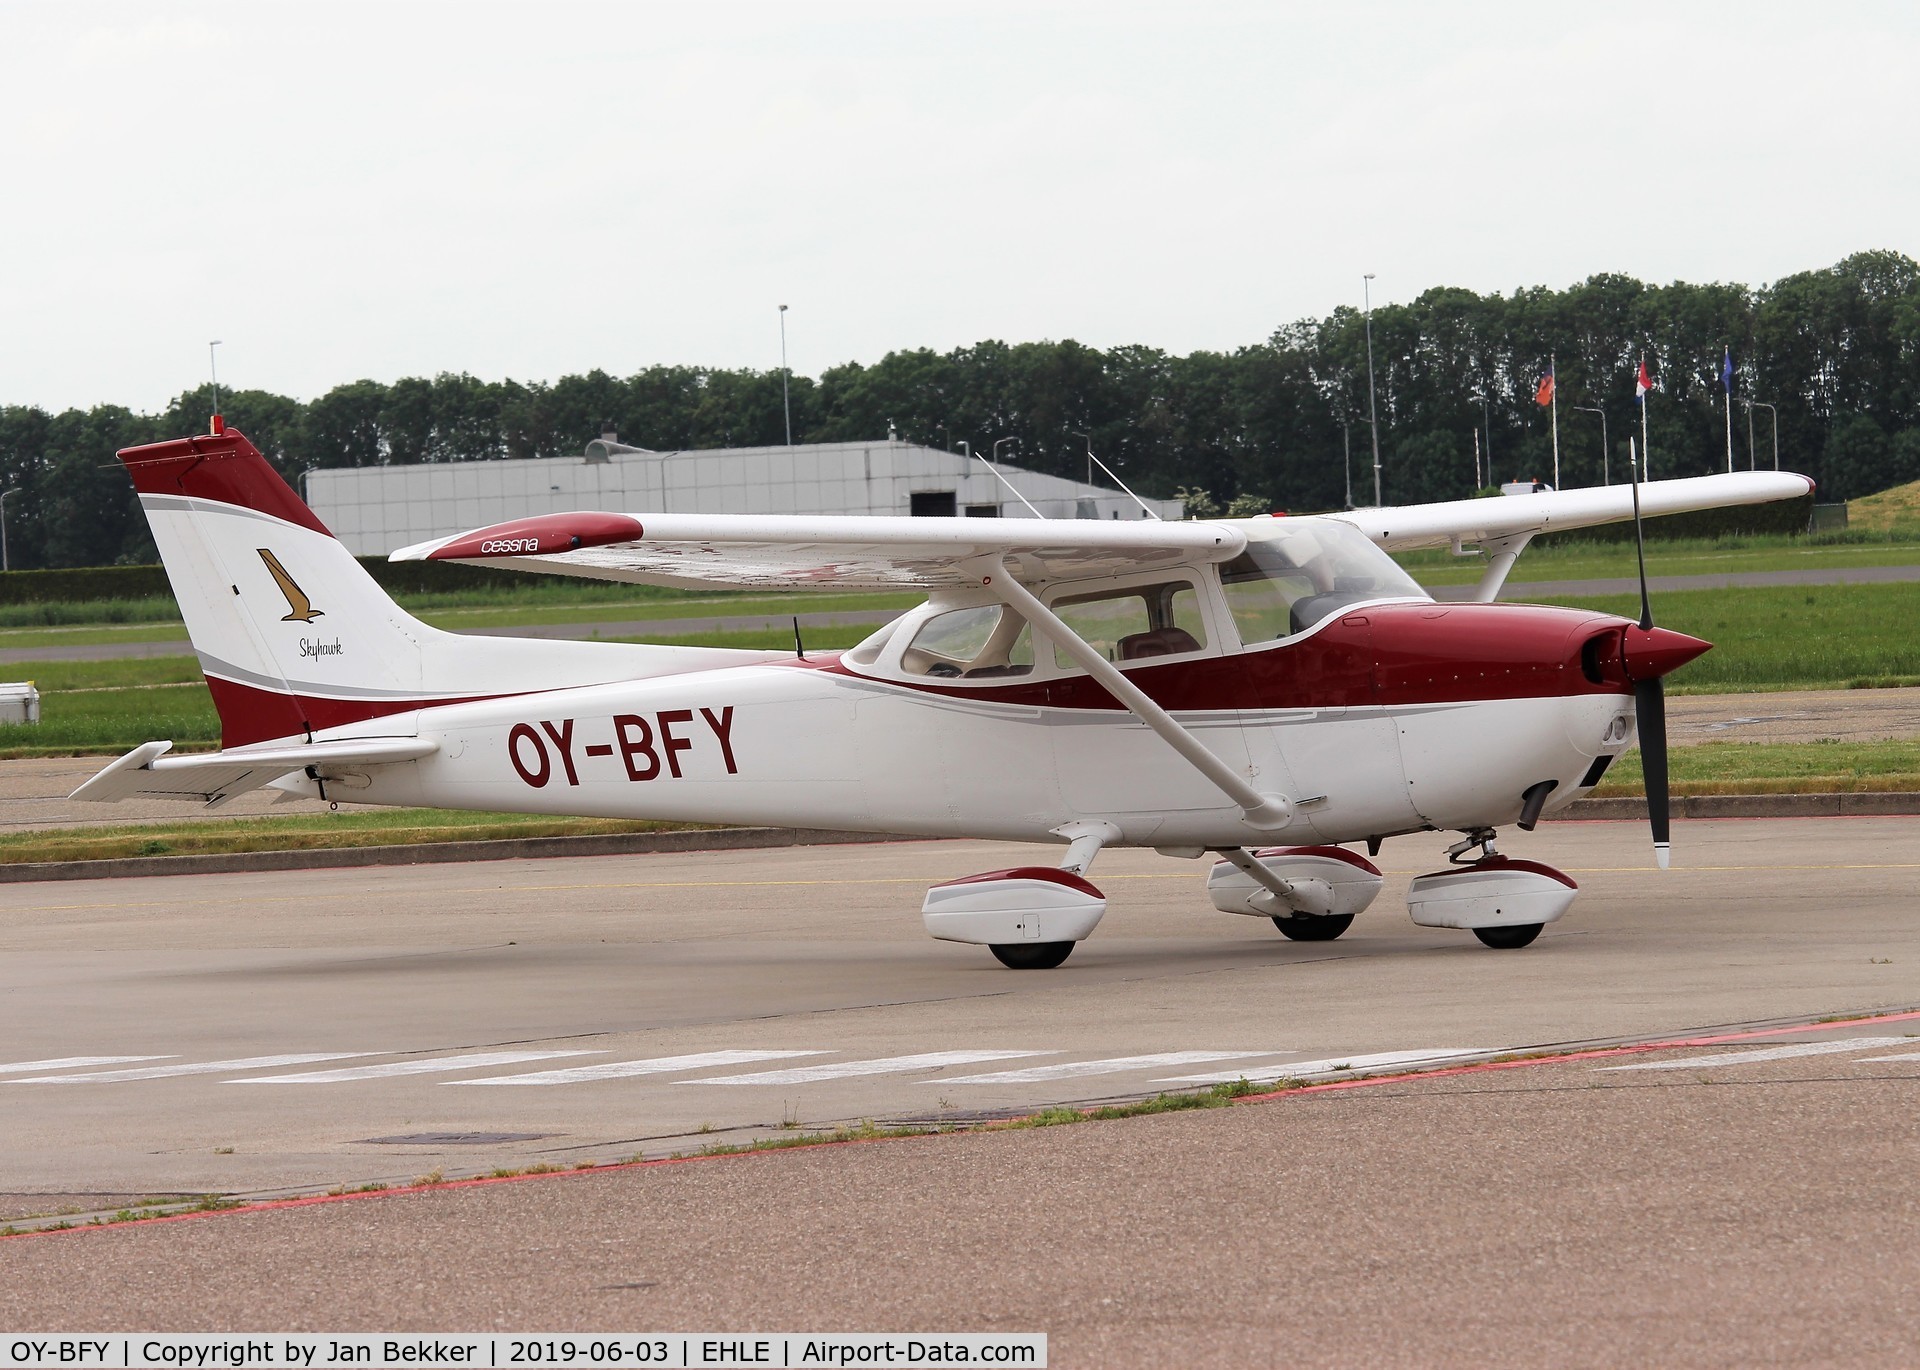 OY-BFY, 1974 Reims F172M Skyhawk C/N 1142, Lelystad Airport